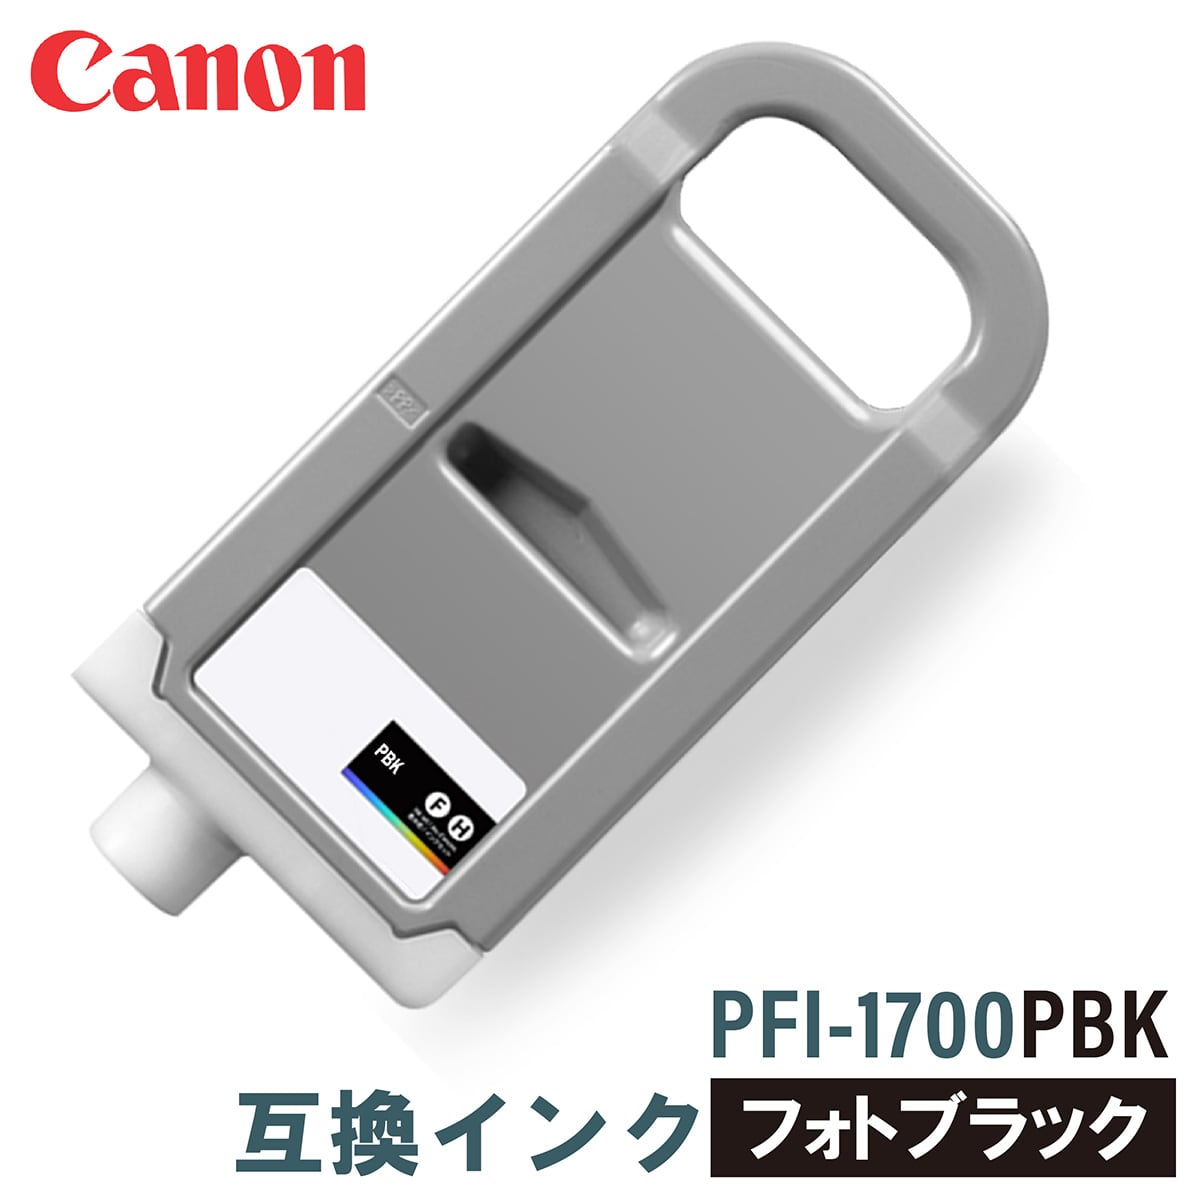 canon キヤノン 大判プリンタ インクタンク PFI-1700 PC フォトシアン 700ml